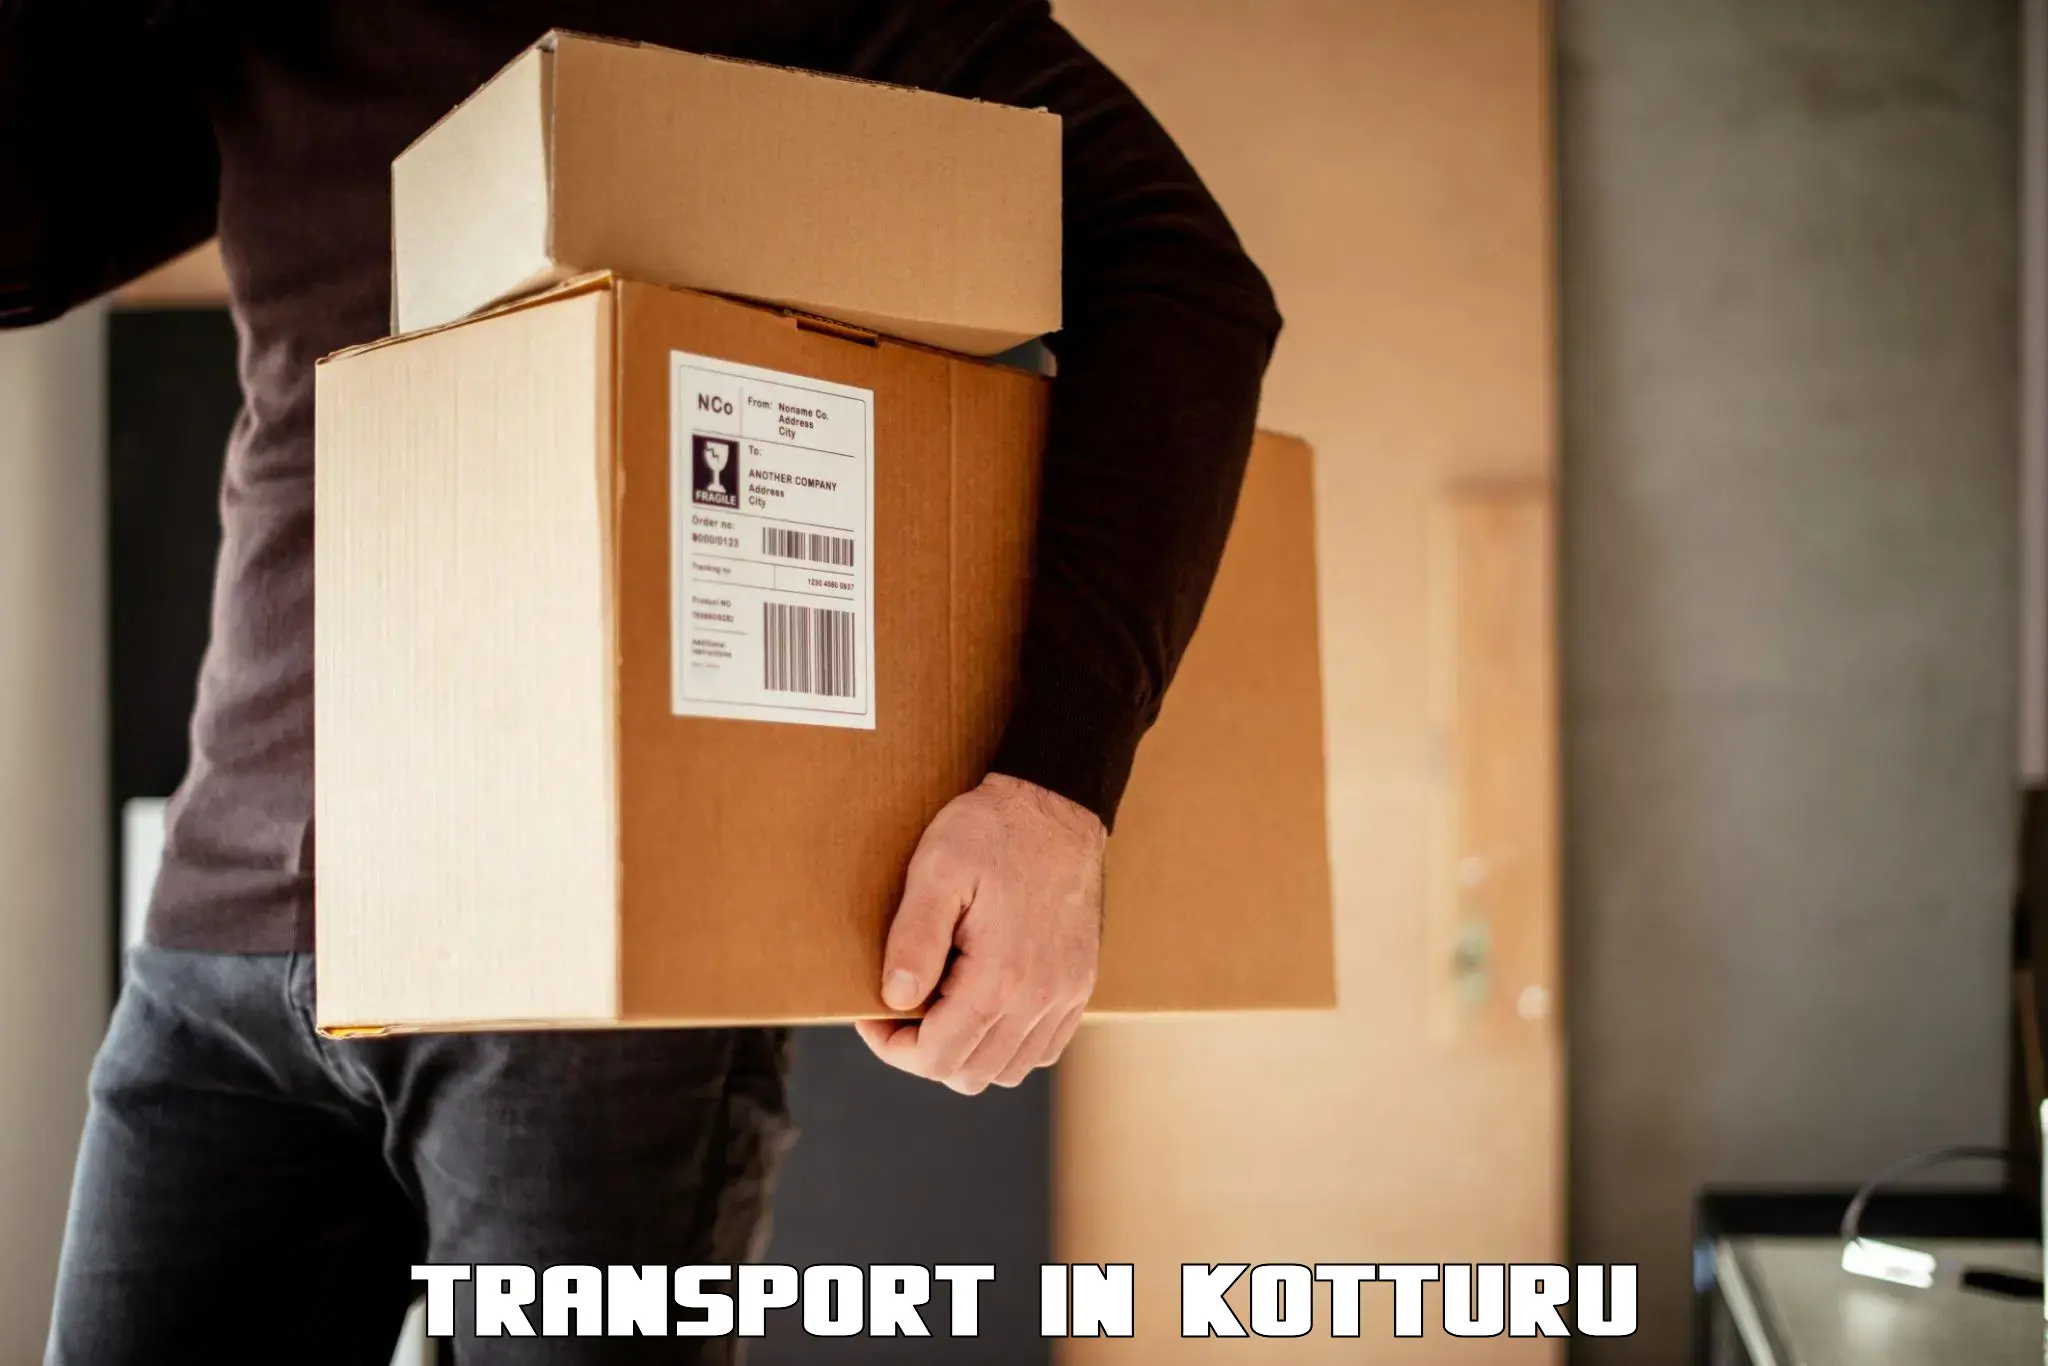 Goods delivery service in Kotturu